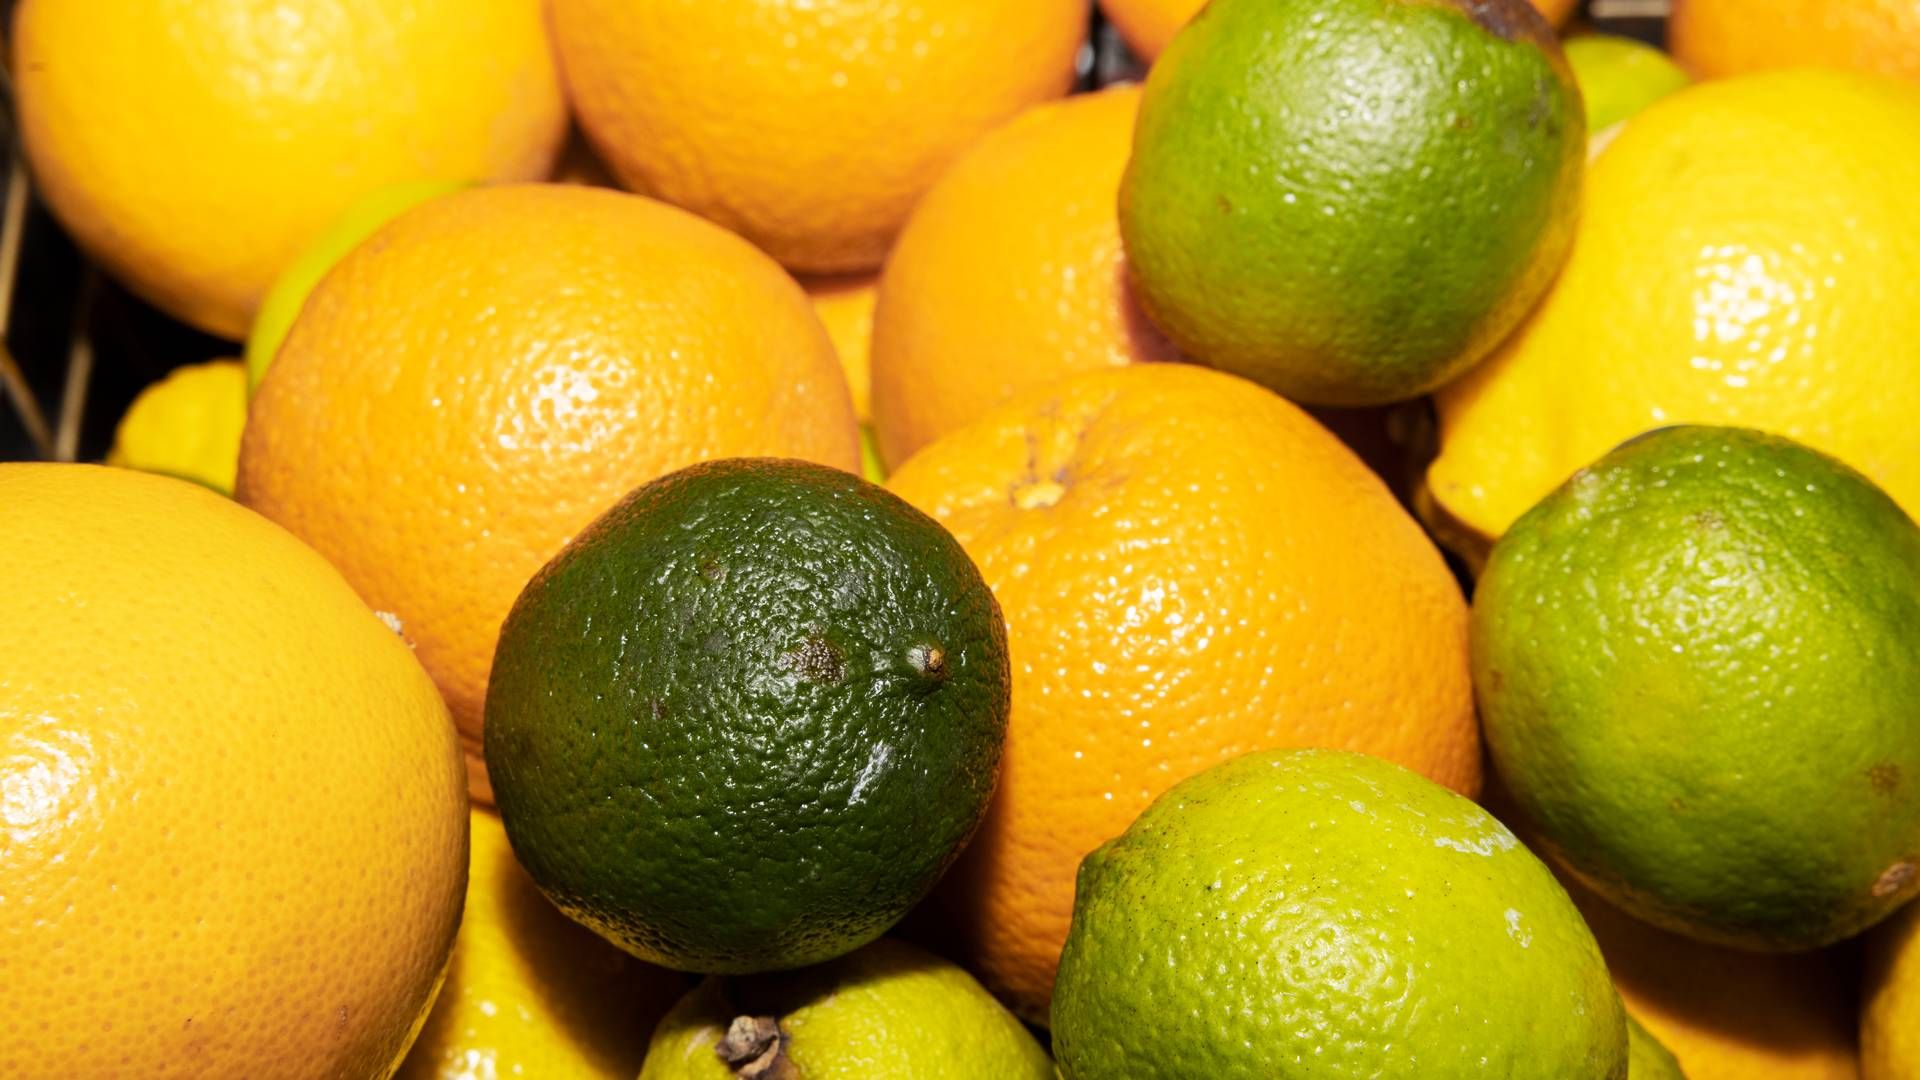 CP Kelco tjener blandt andet penge på at udvinde stoffet pektin fra citronskræller, der bruges i fødevareproduktion. | Foto: Thomas Borberg